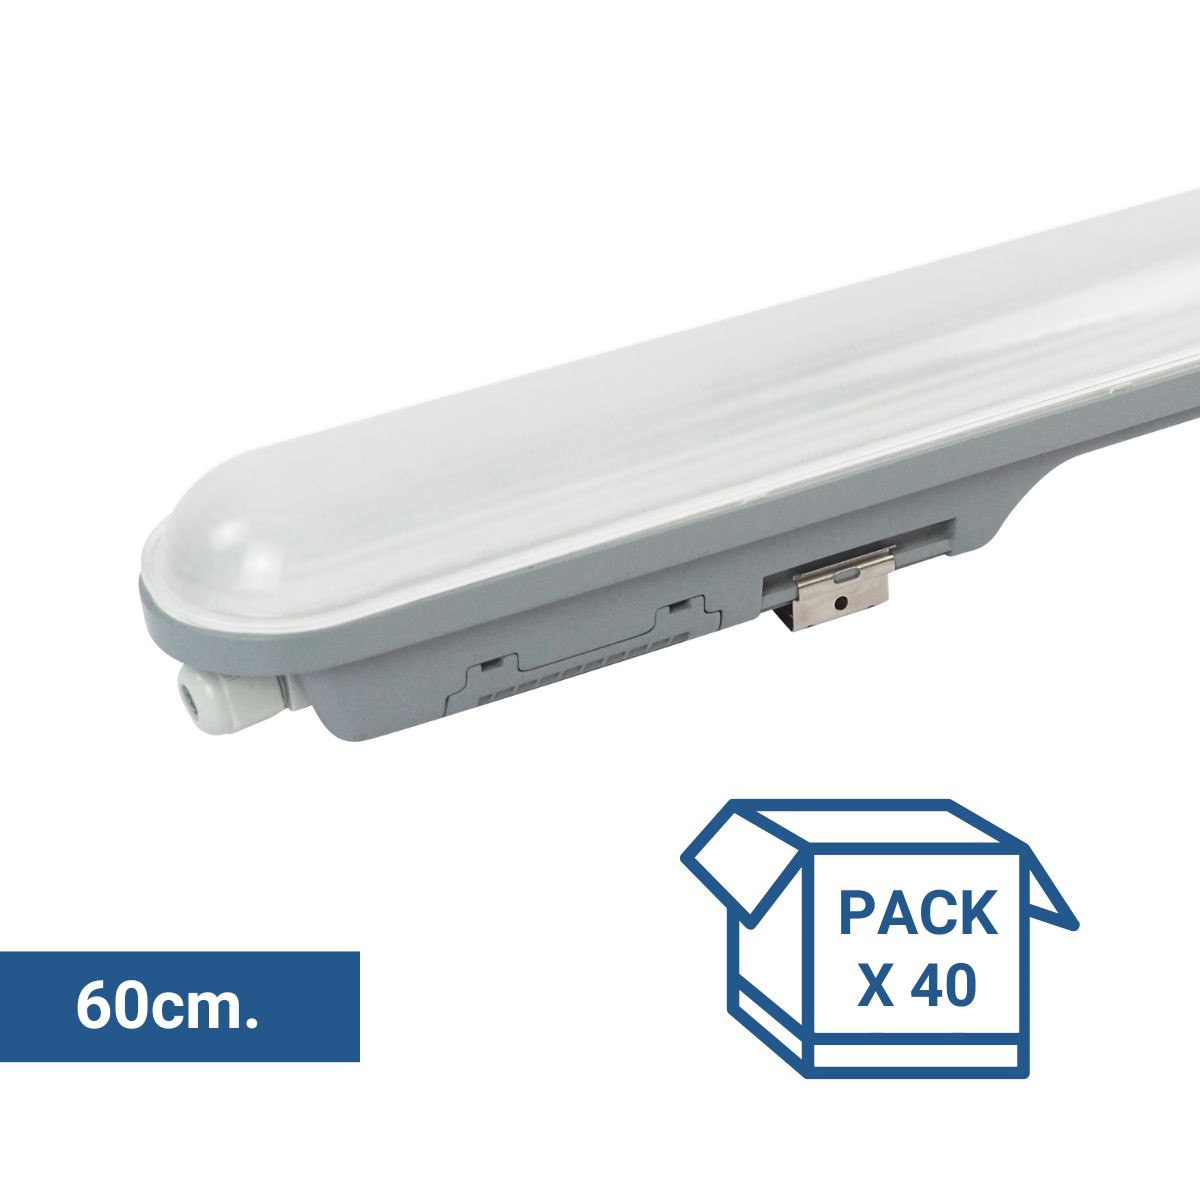 Pack x 40 - Escudo de ligação LED linear à prova de água 9W - 60cm - IP65 - 4000K